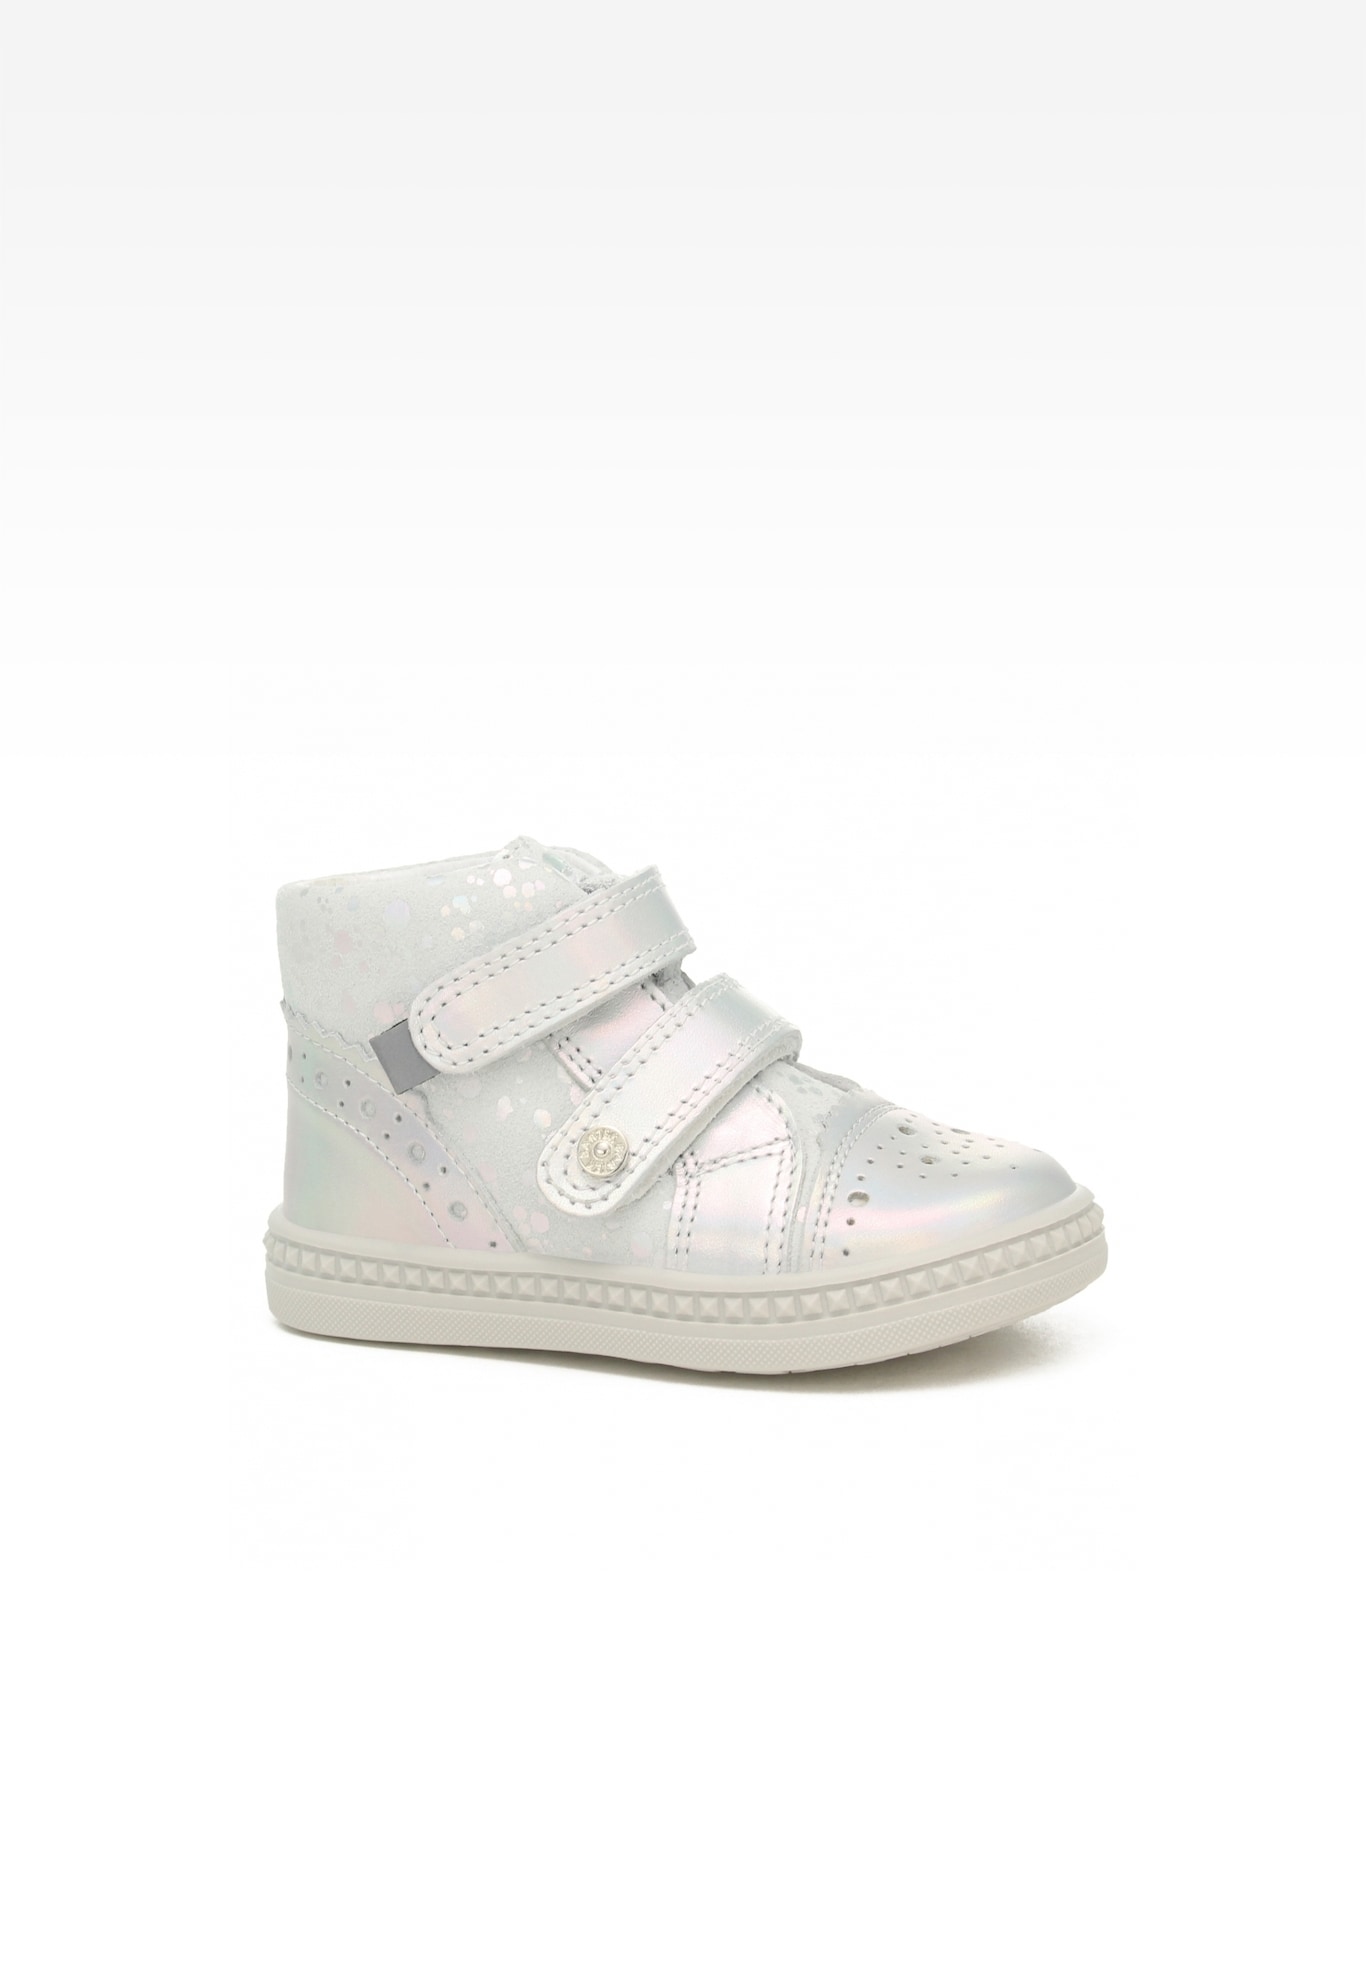 Sneakers BARTEK 091764-025 II, dla dziewcząt, biało-srebrny